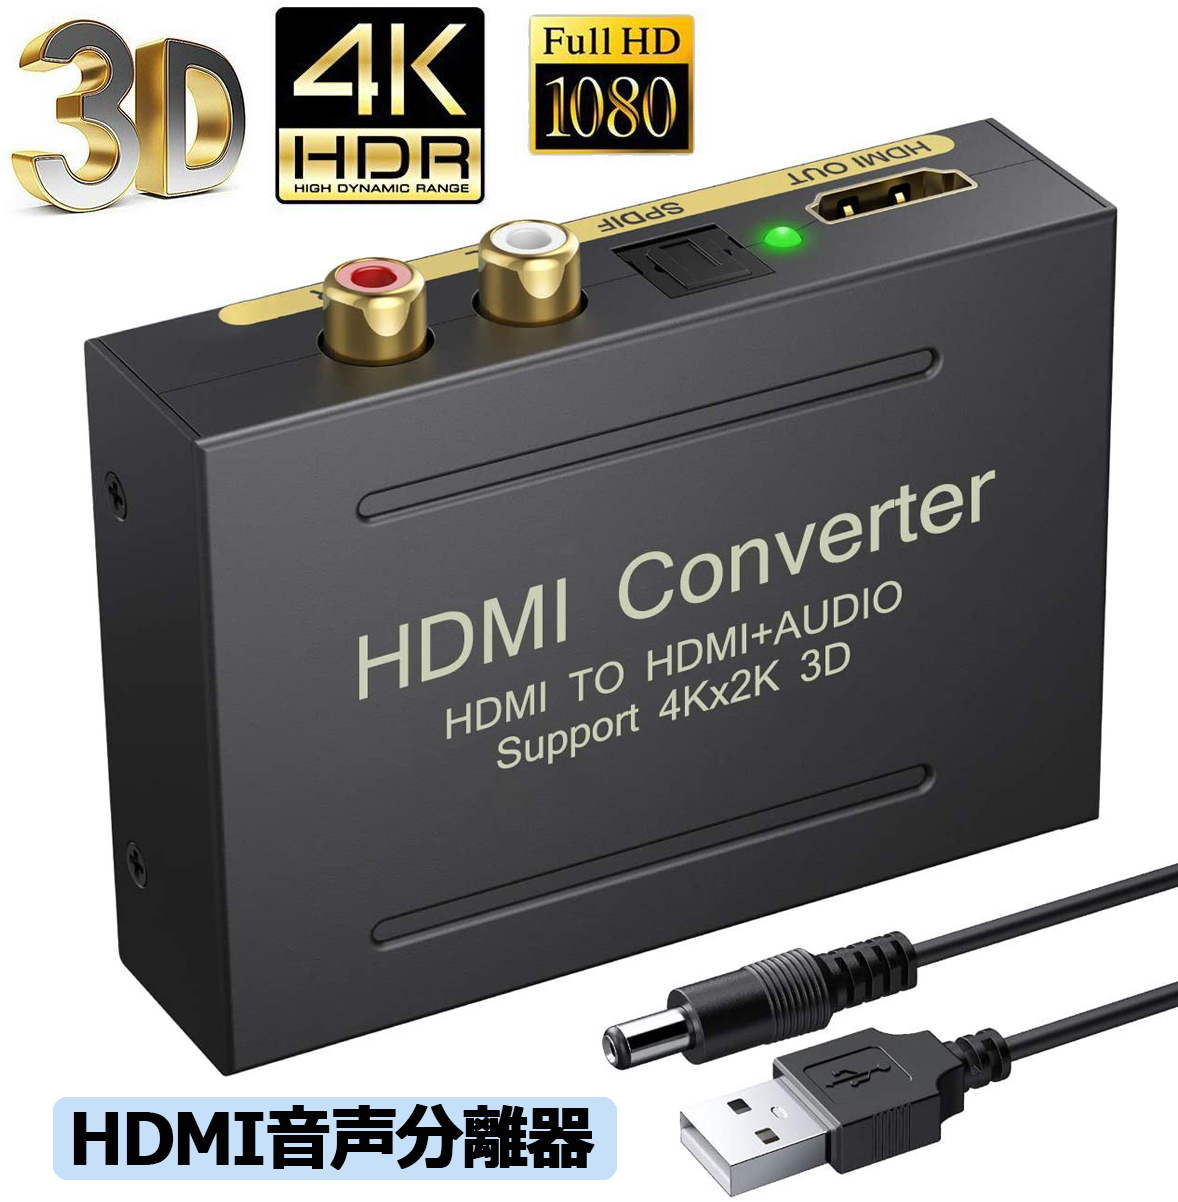 【売り切り御免！】 新作人気モデル HDMI オーディオ 分離器 音声分離器 最大 4Kx2K 3D HDMI→HDMI+Audio SPDIF光デジタル+RCAアナログ出力 3種類 音声 送料無料 分離モード PASS 2CH 5.1CH HDMI出力 ステレオ サラウンド サウンド コンバータ tomcat.vn tomcat.vn